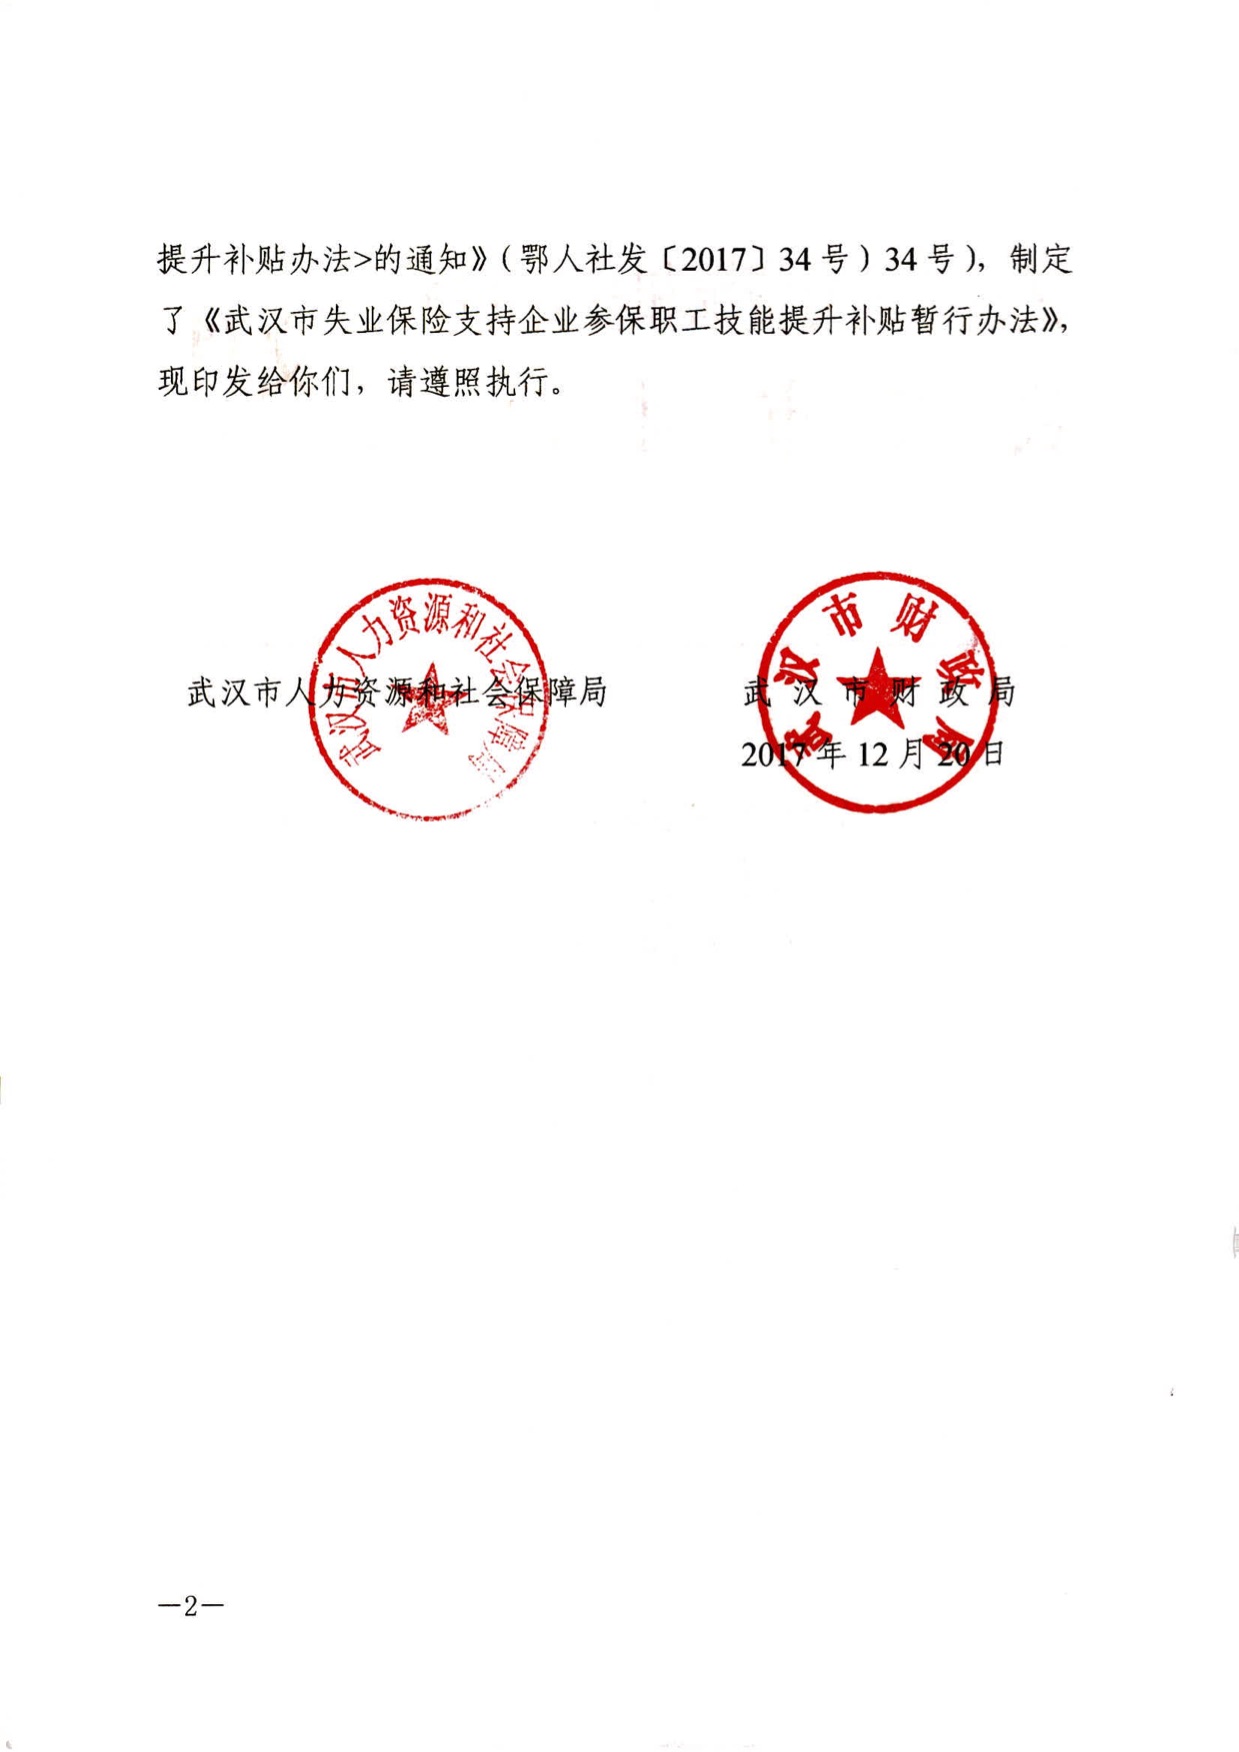 武汉市人民政府印章图片